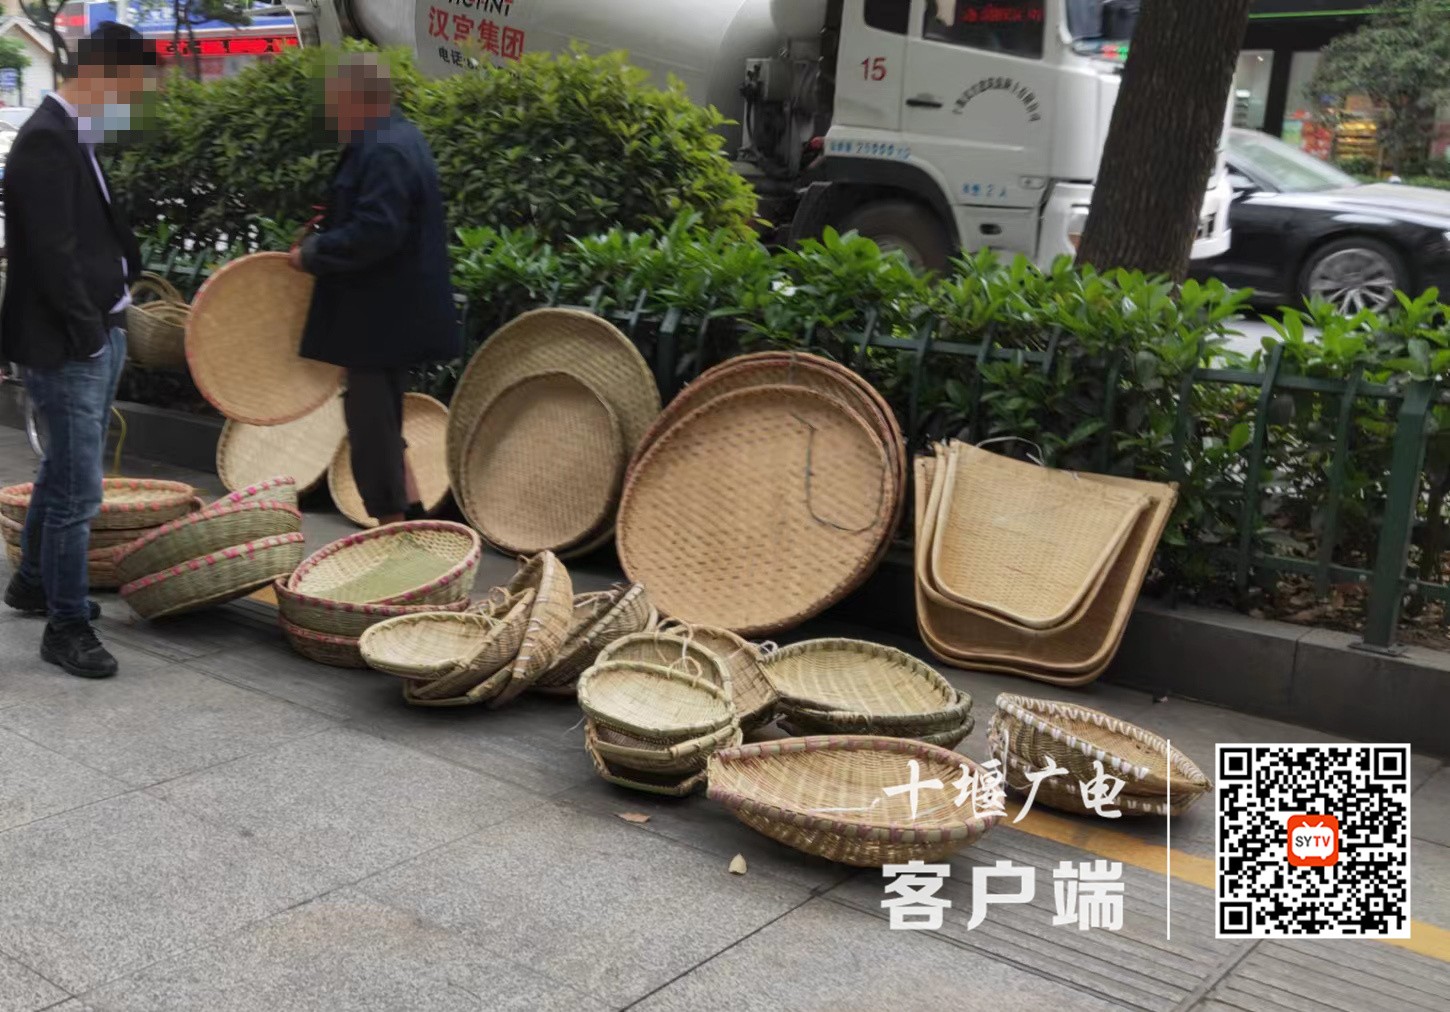 汉江中路存在流动摊贩现象